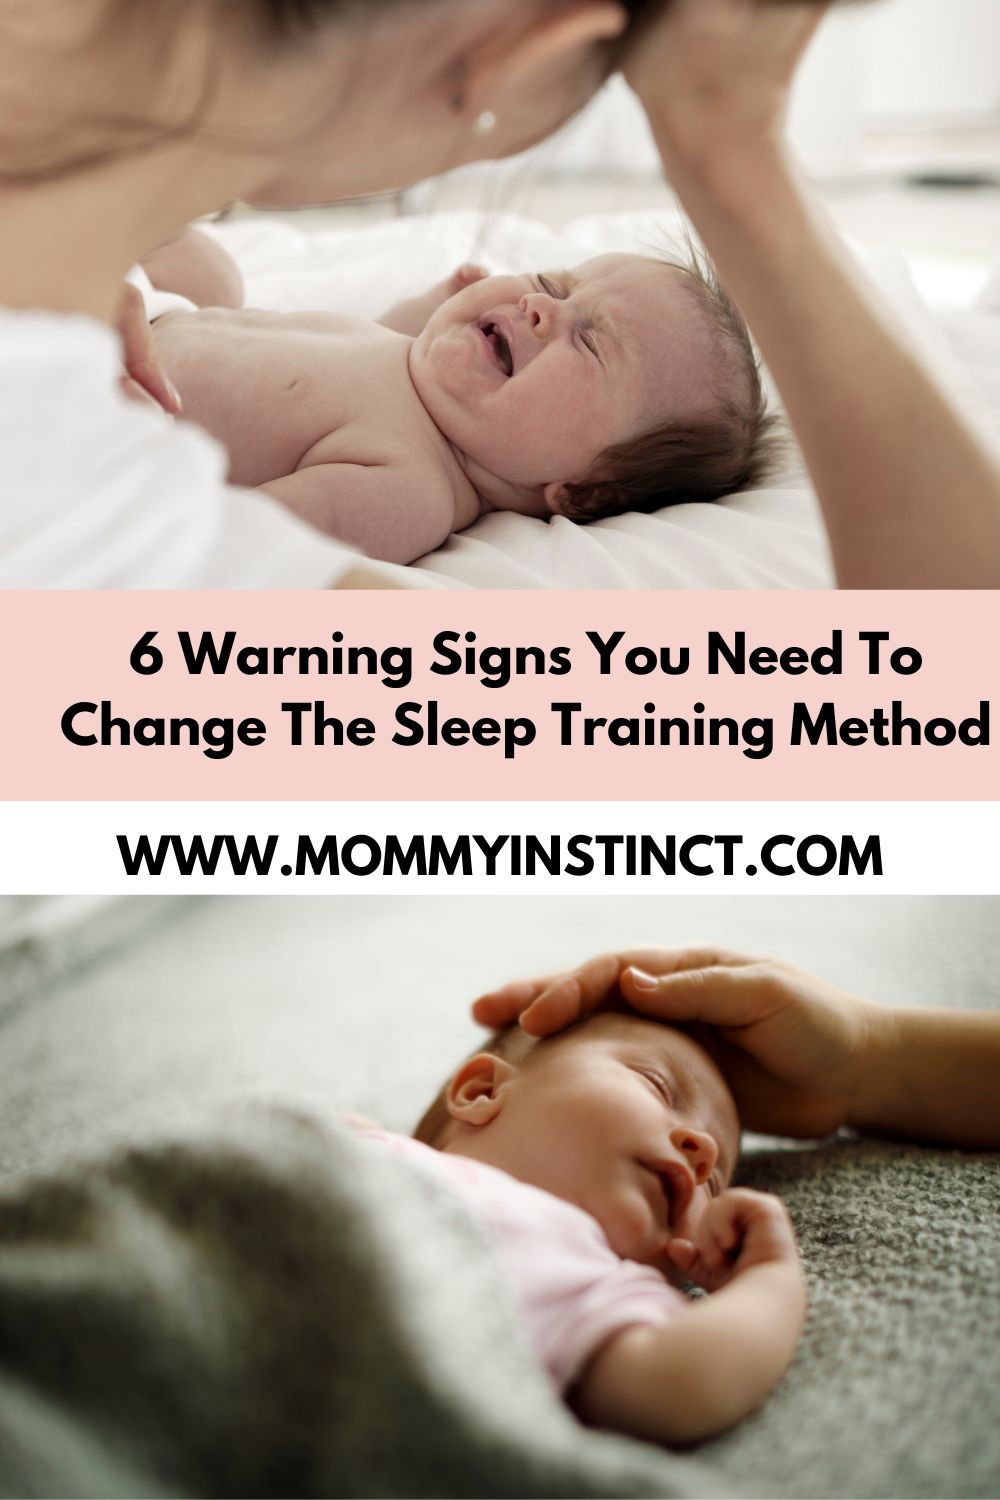 Change The Sleep Training Method